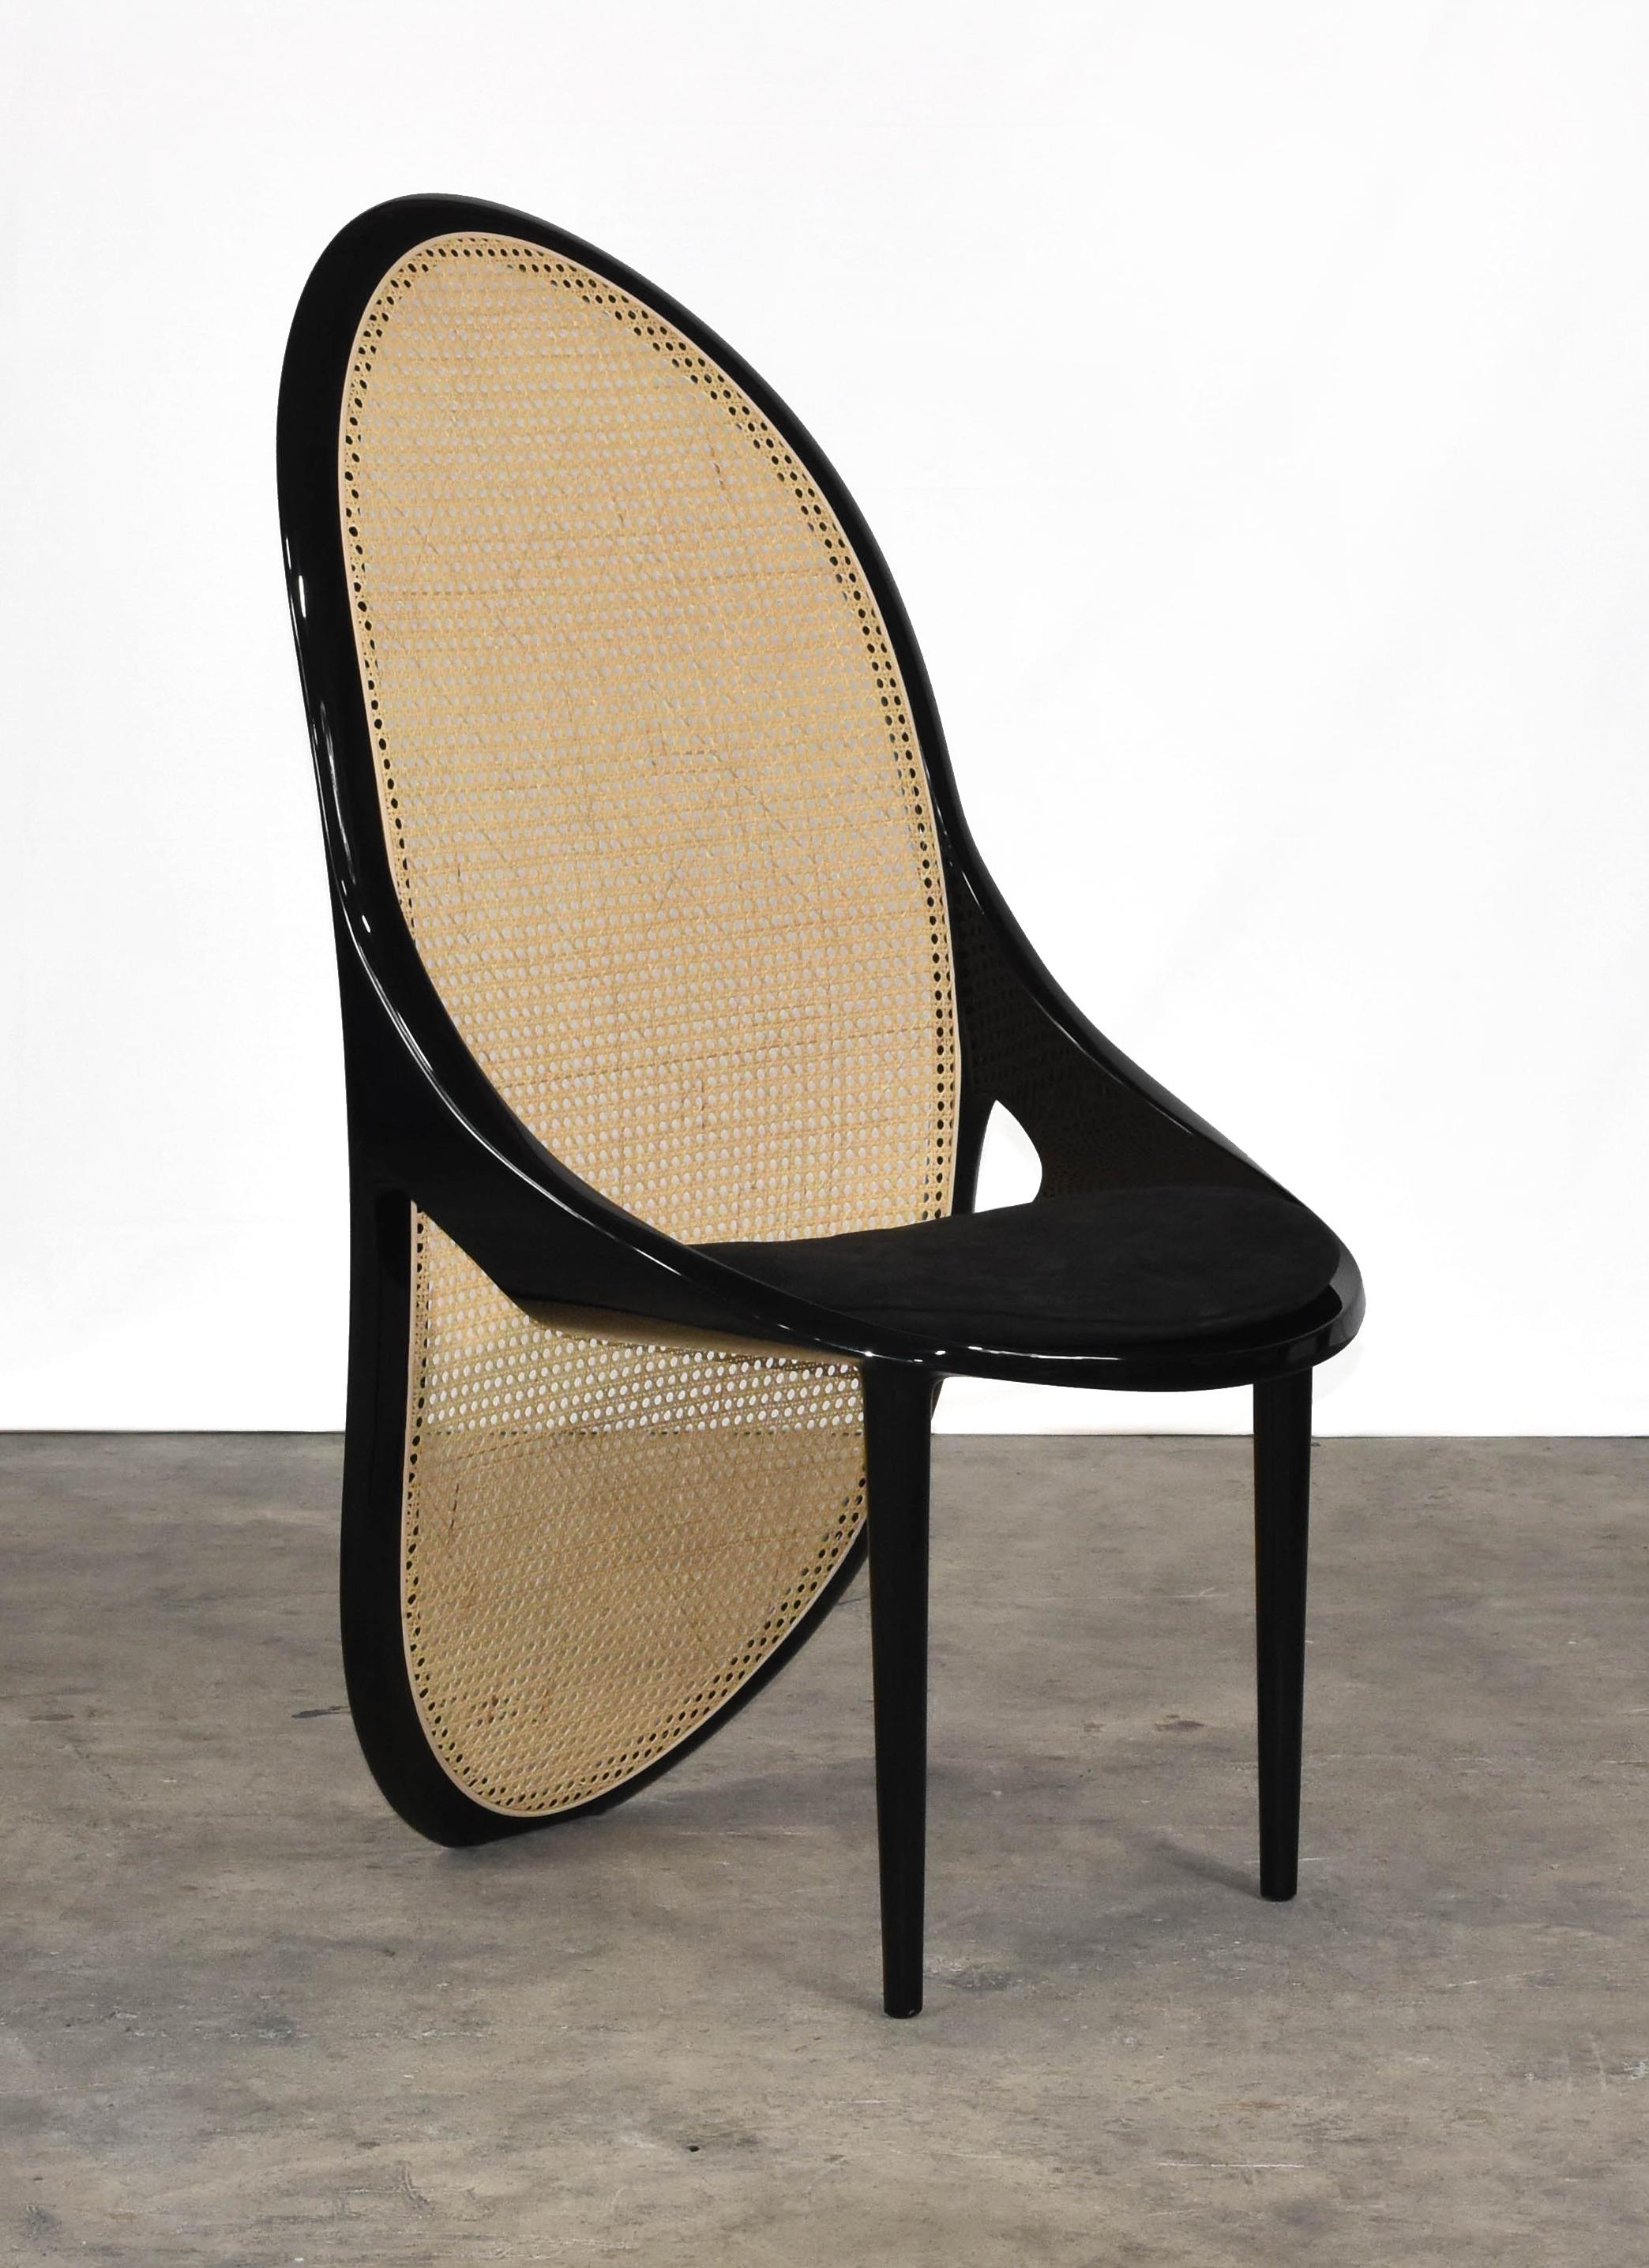 Der Wiener Stuhl von Gabriella Aztalos ist in schwarz lackiertem Holz erhältlich. Die Rückenlehne ist aus Wiener Bambusstroh mit mattem Naturfinish gefertigt.
 